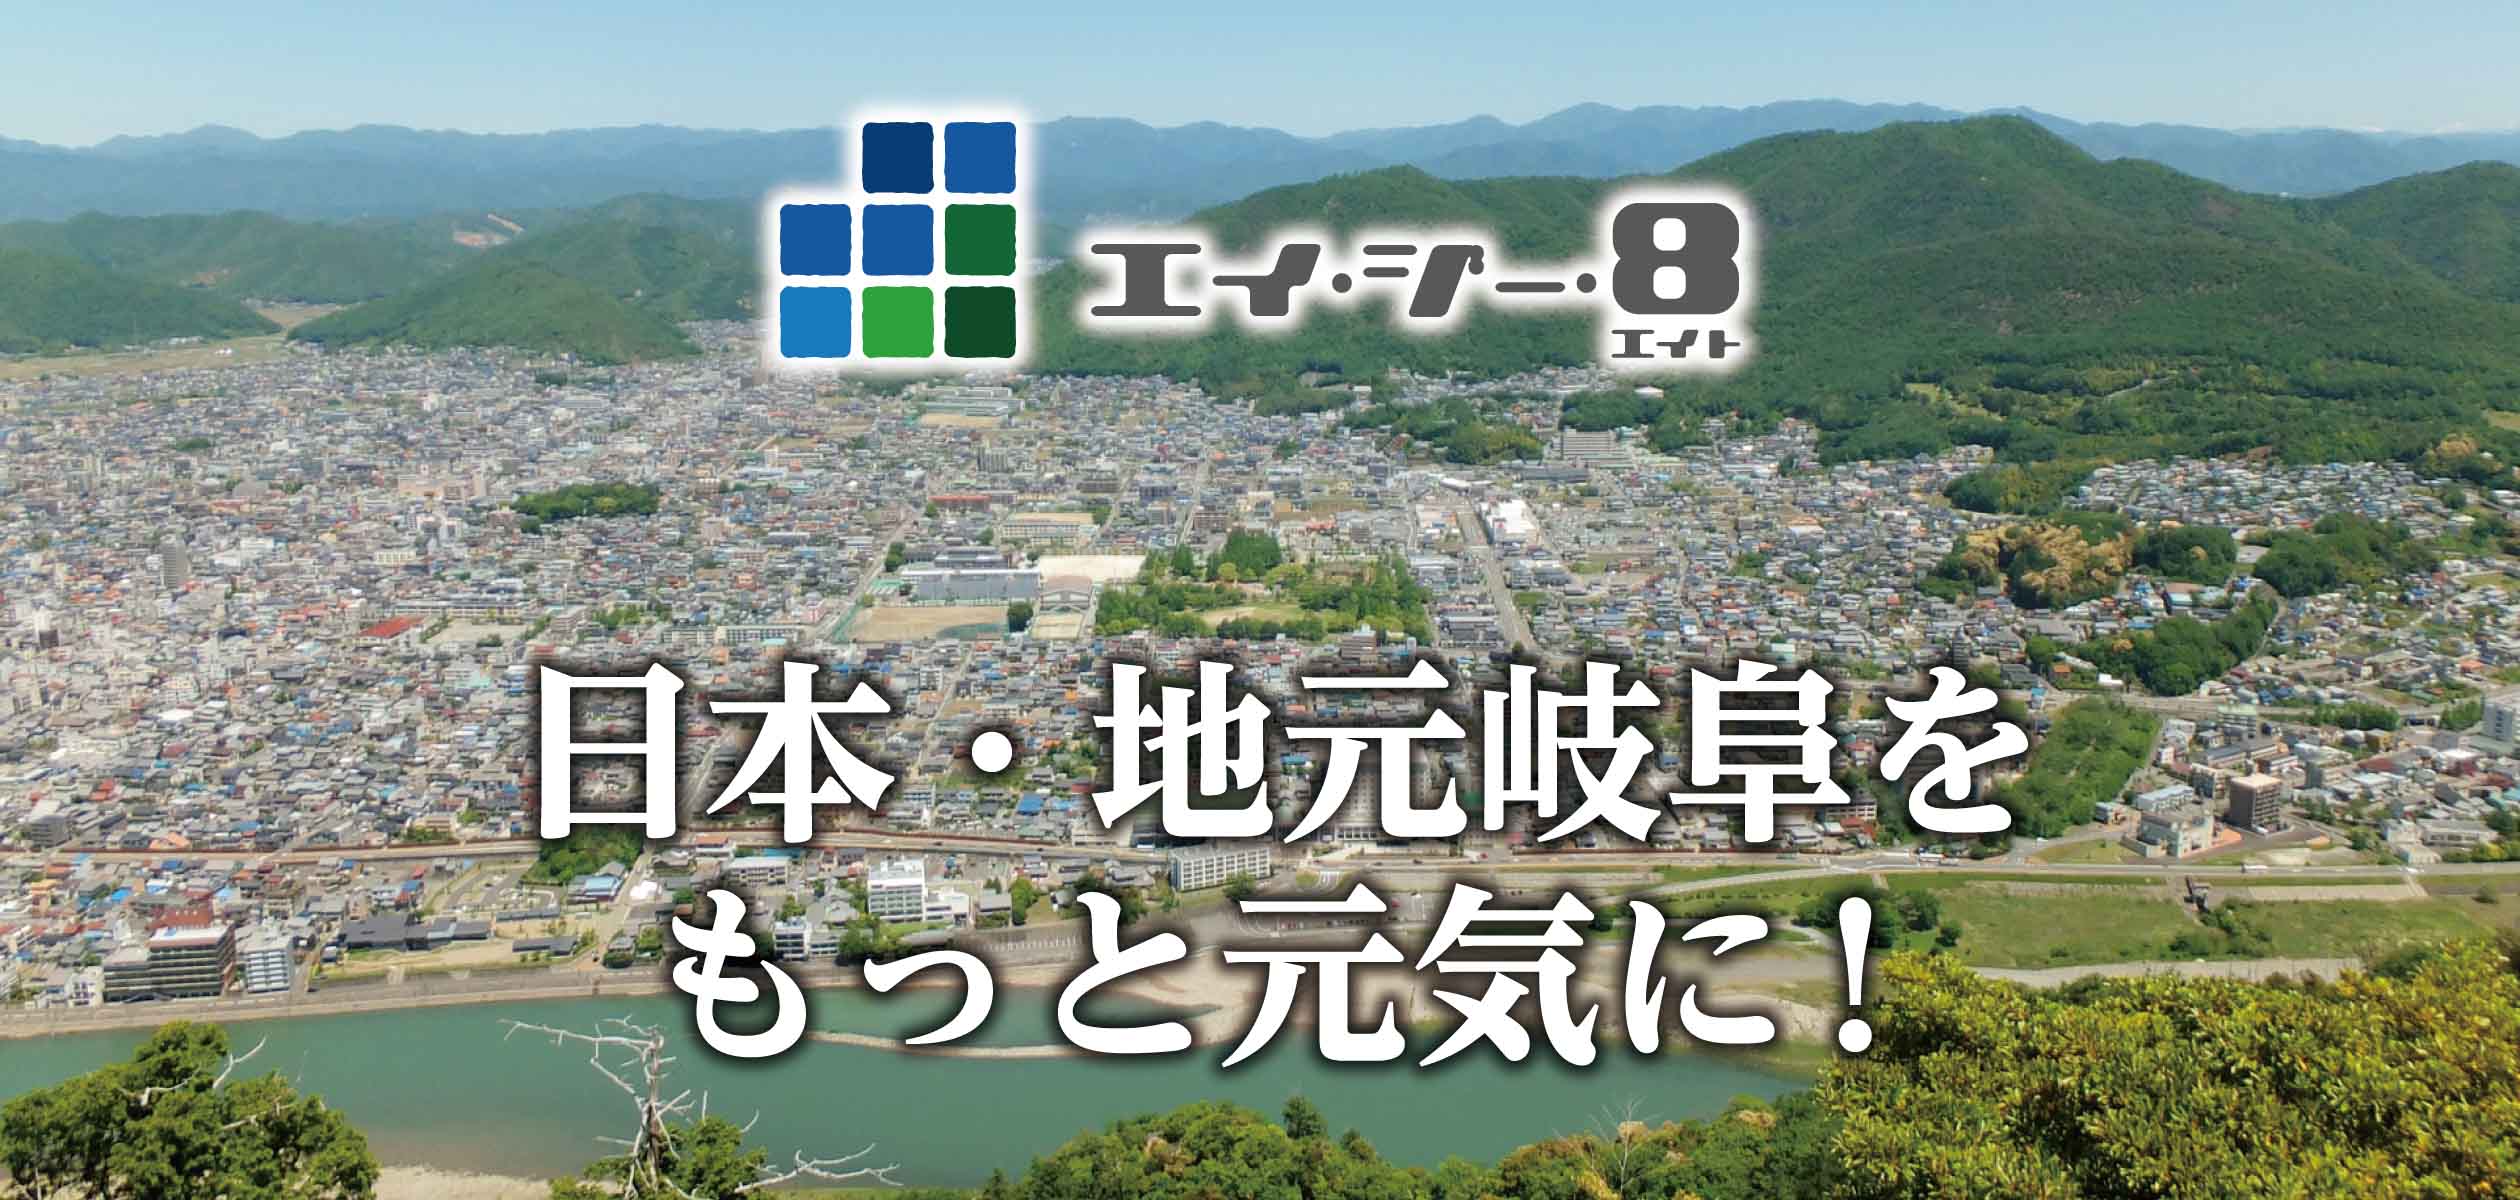 岐阜県中心に地元・地域の活性化を目指しています